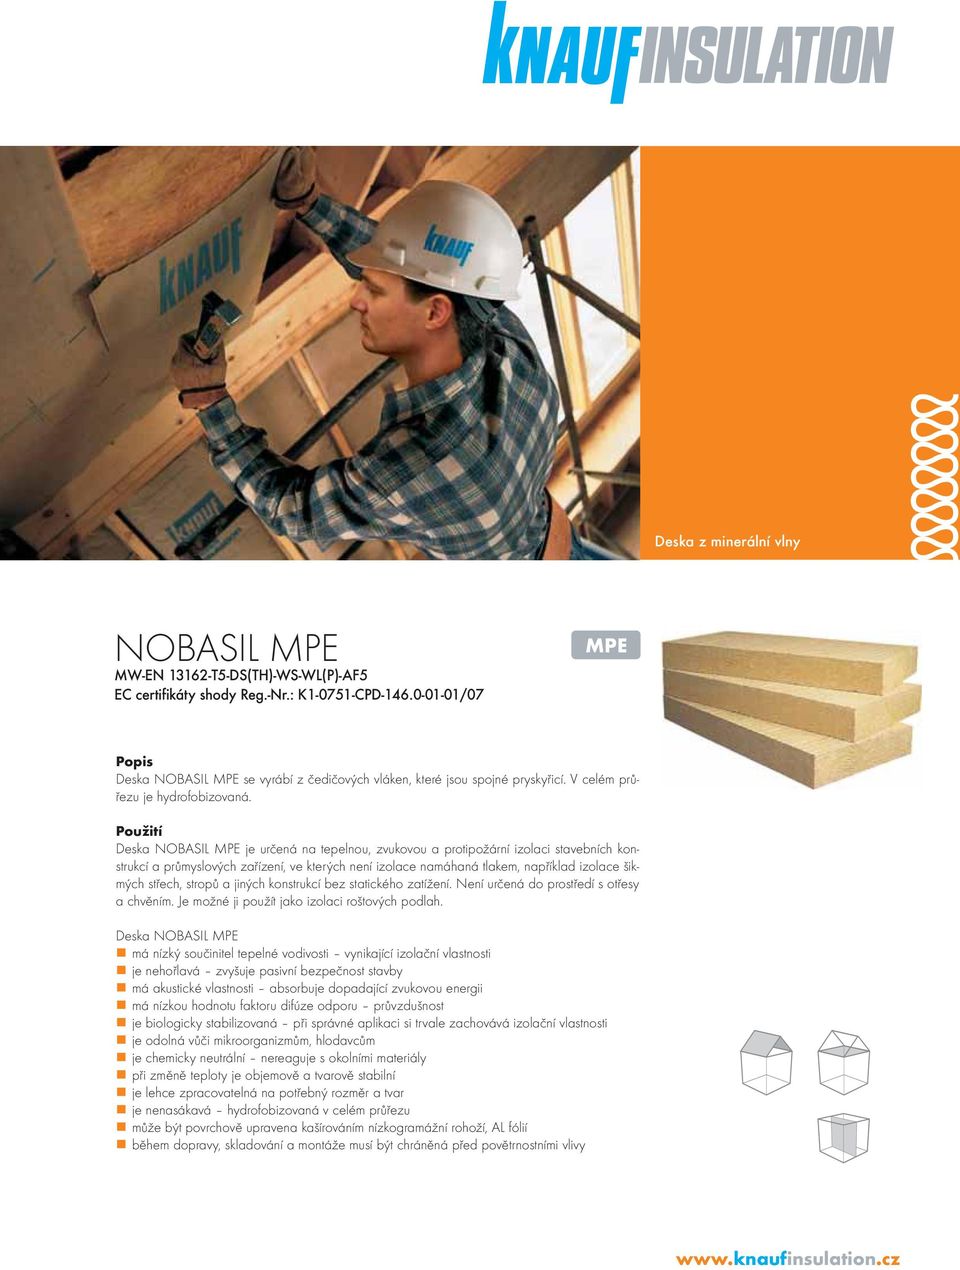 Použití Deska NOBASIL MPE je určená na tepelnou, zvukovou a protipožární izolaci stavebních konstrukcí a průmyslových zařízení, ve kterých není izolace namáhaná tlakem, například izolace šikmých